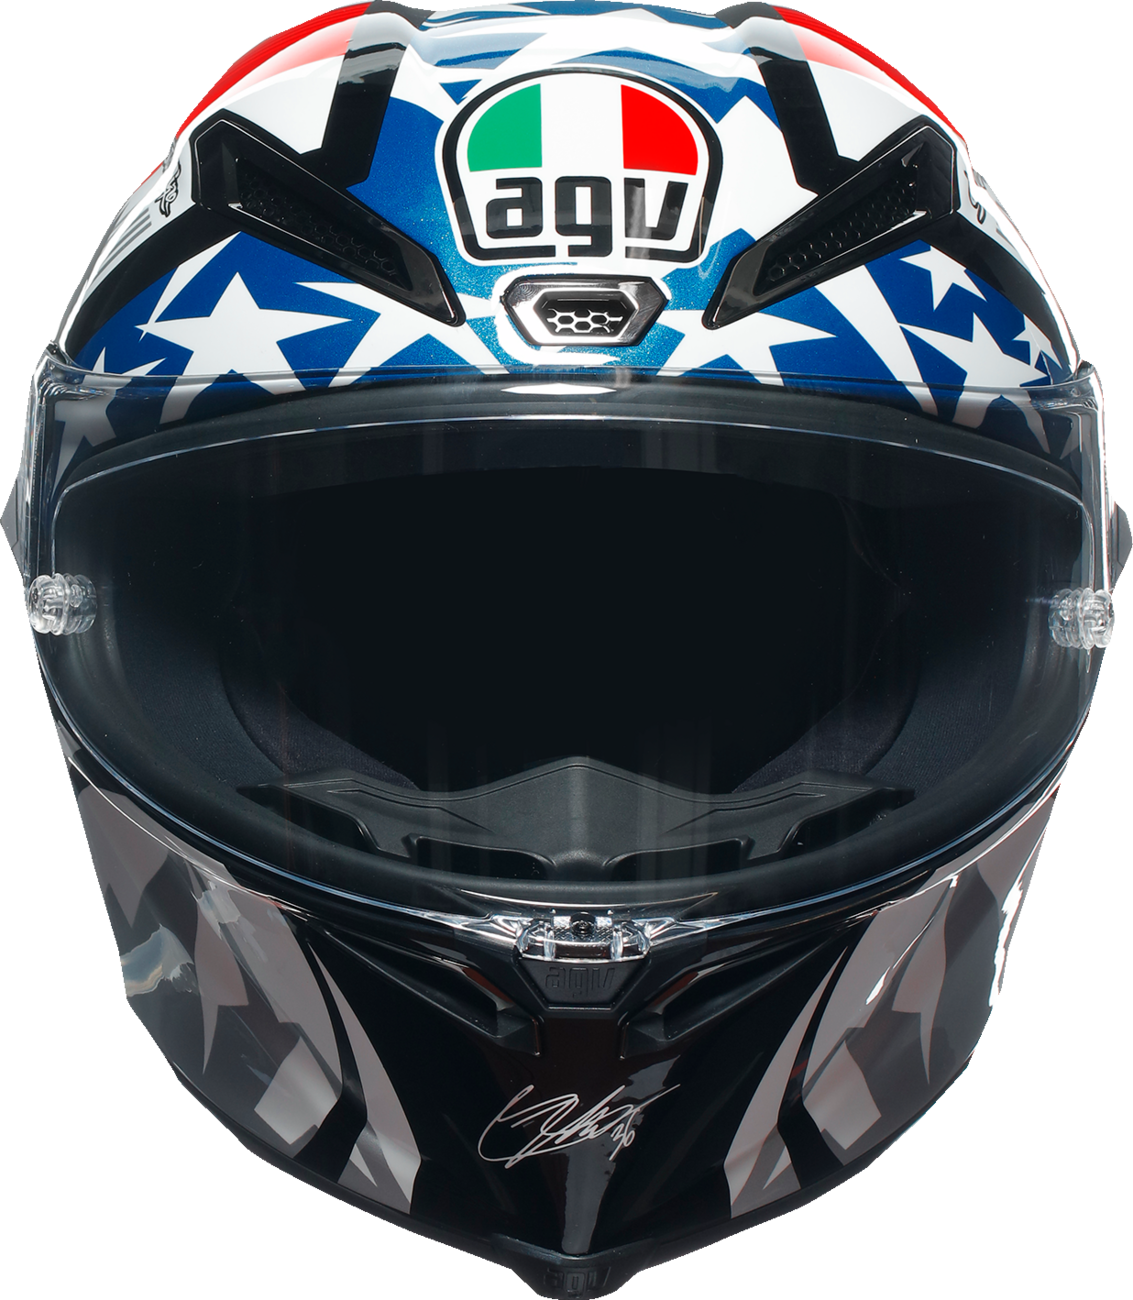 AGV Pista GP RR Helmet - JM AM21 - Limited - Large 216031D9MY01609